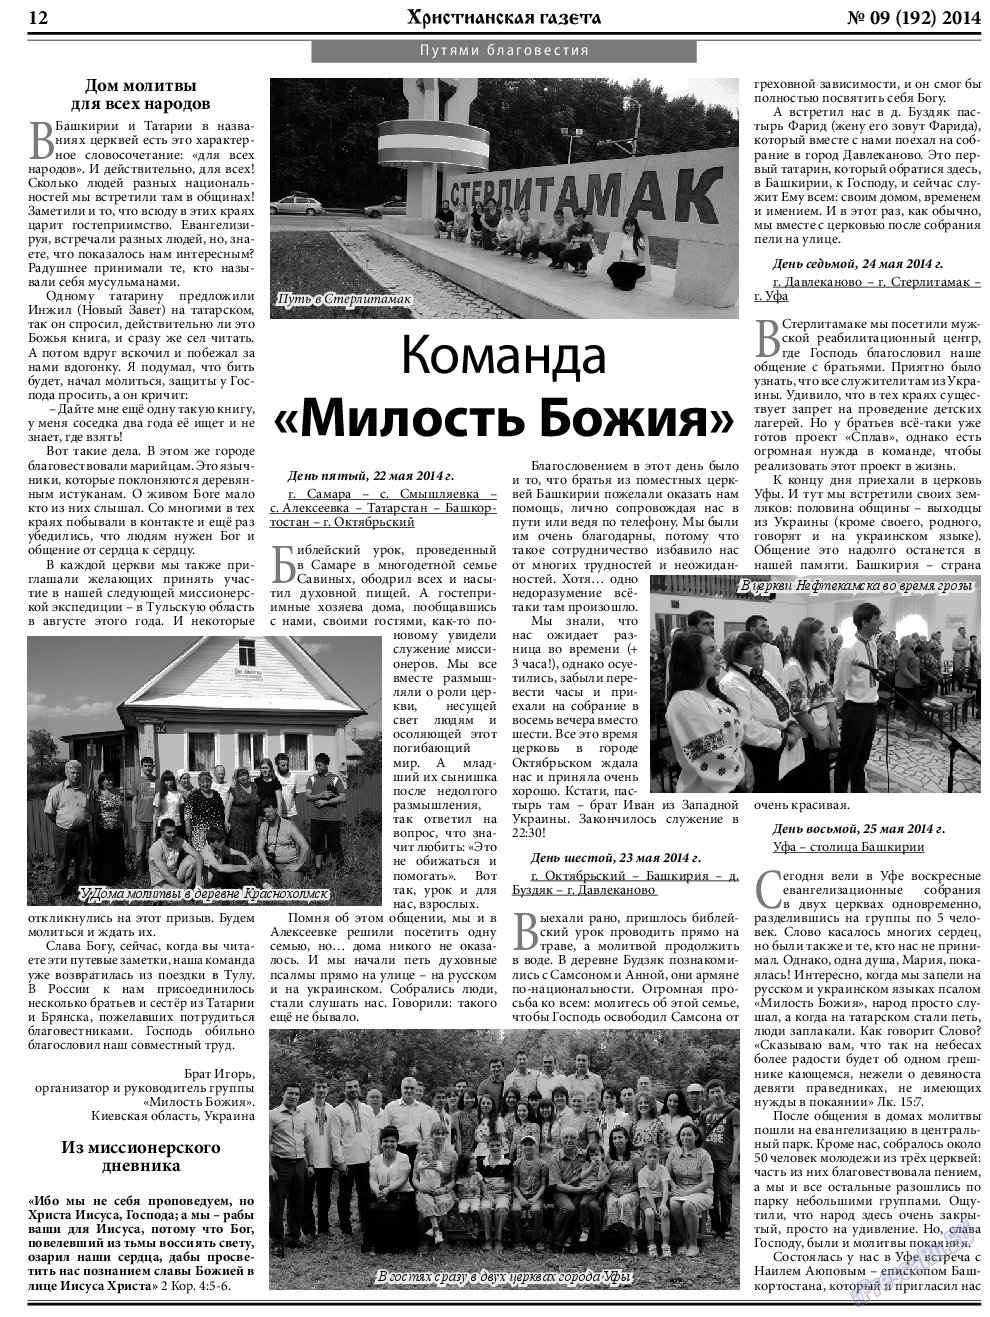 Христианская газета, газета. 2014 №9 стр.12